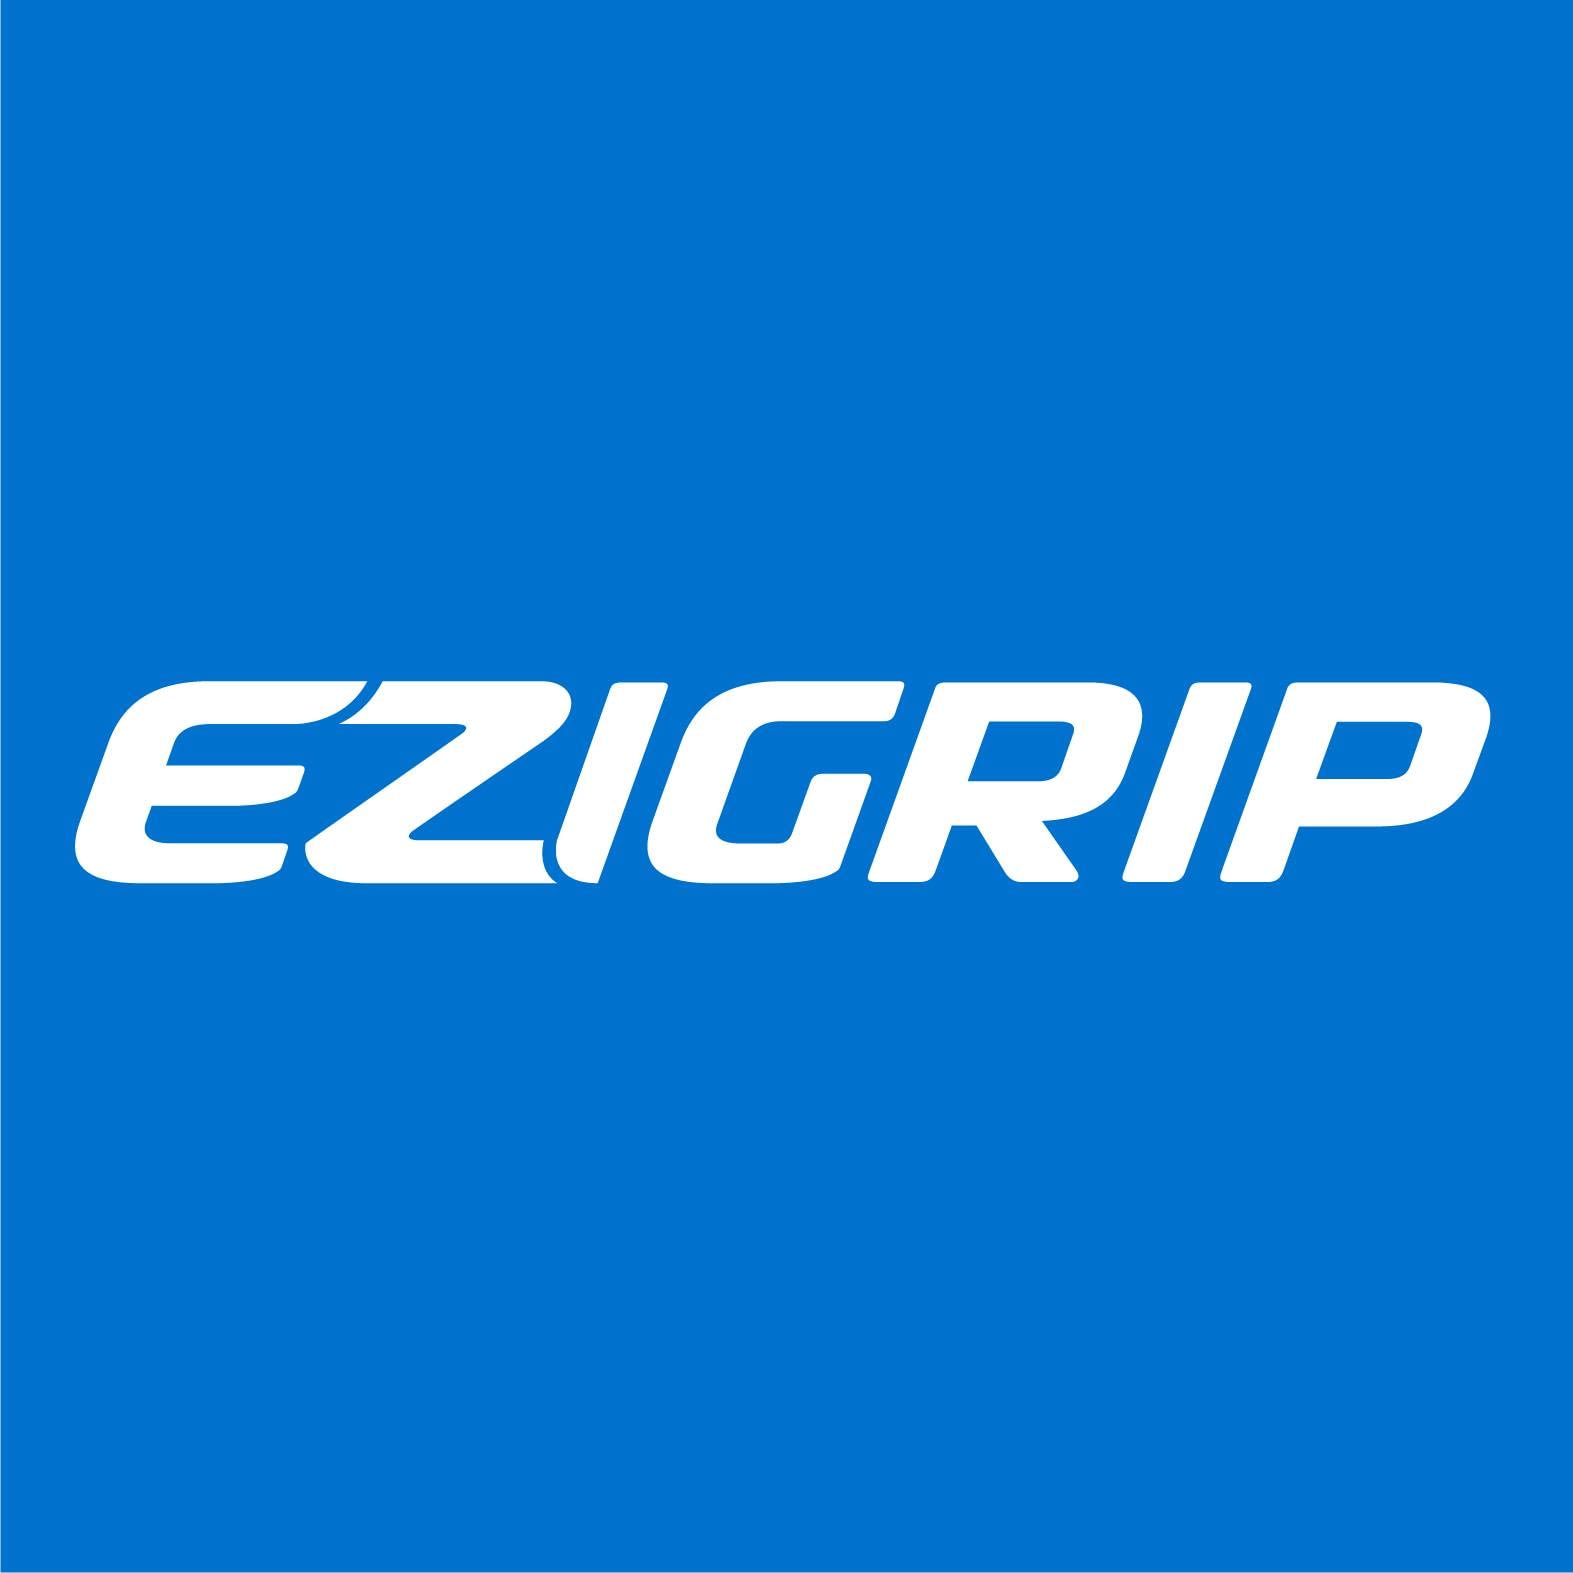 ezigrip 2 bike electric bike rack review